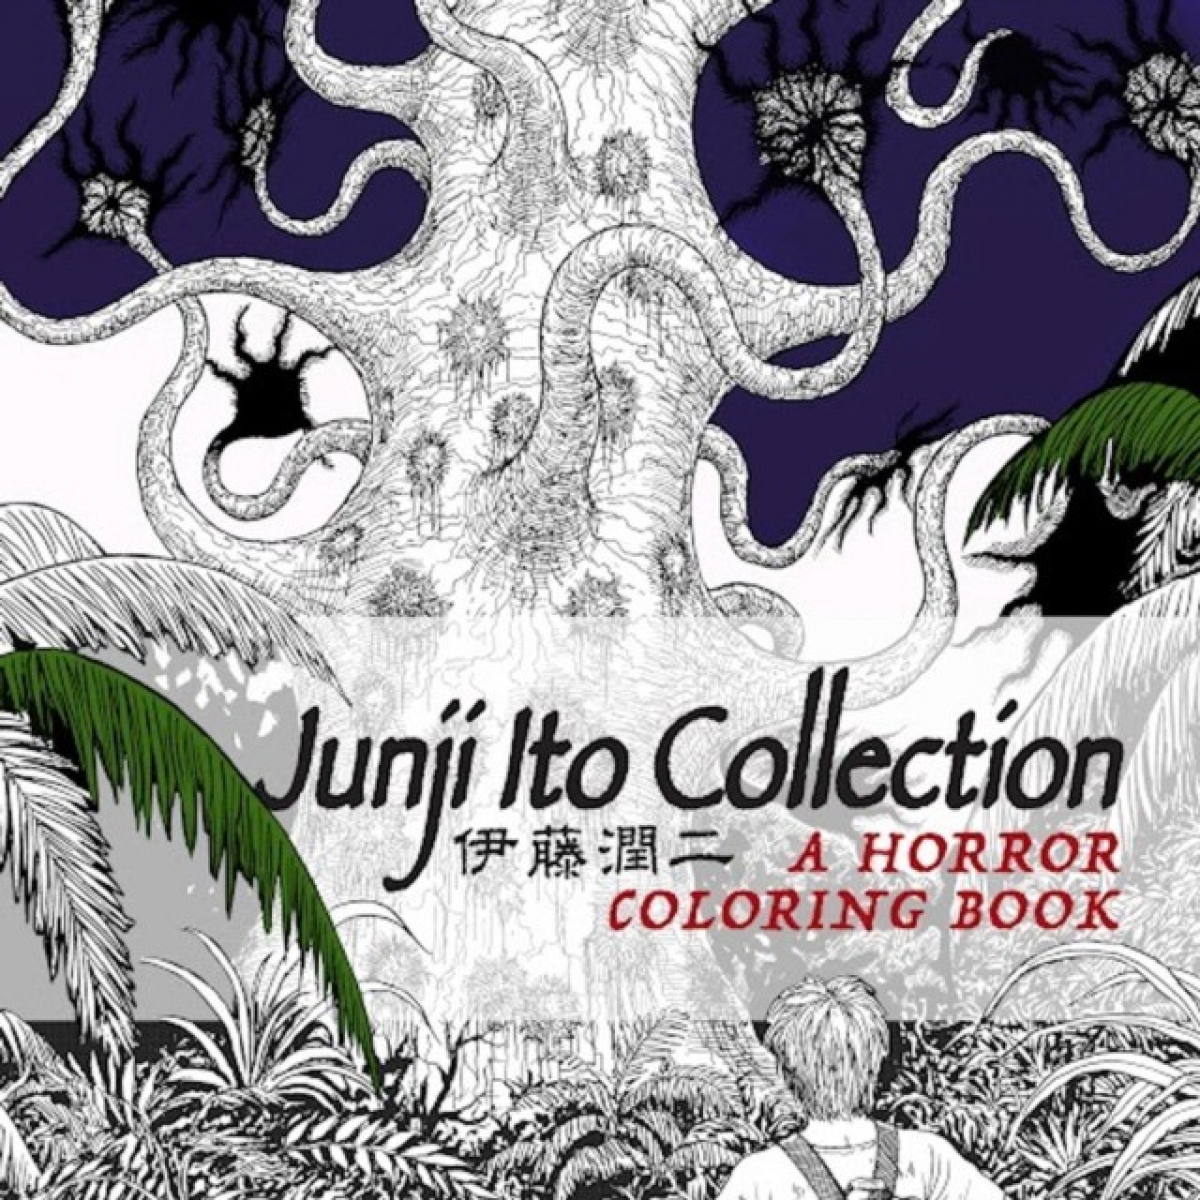 Ito, Junji Junji Ito collection coloring book 